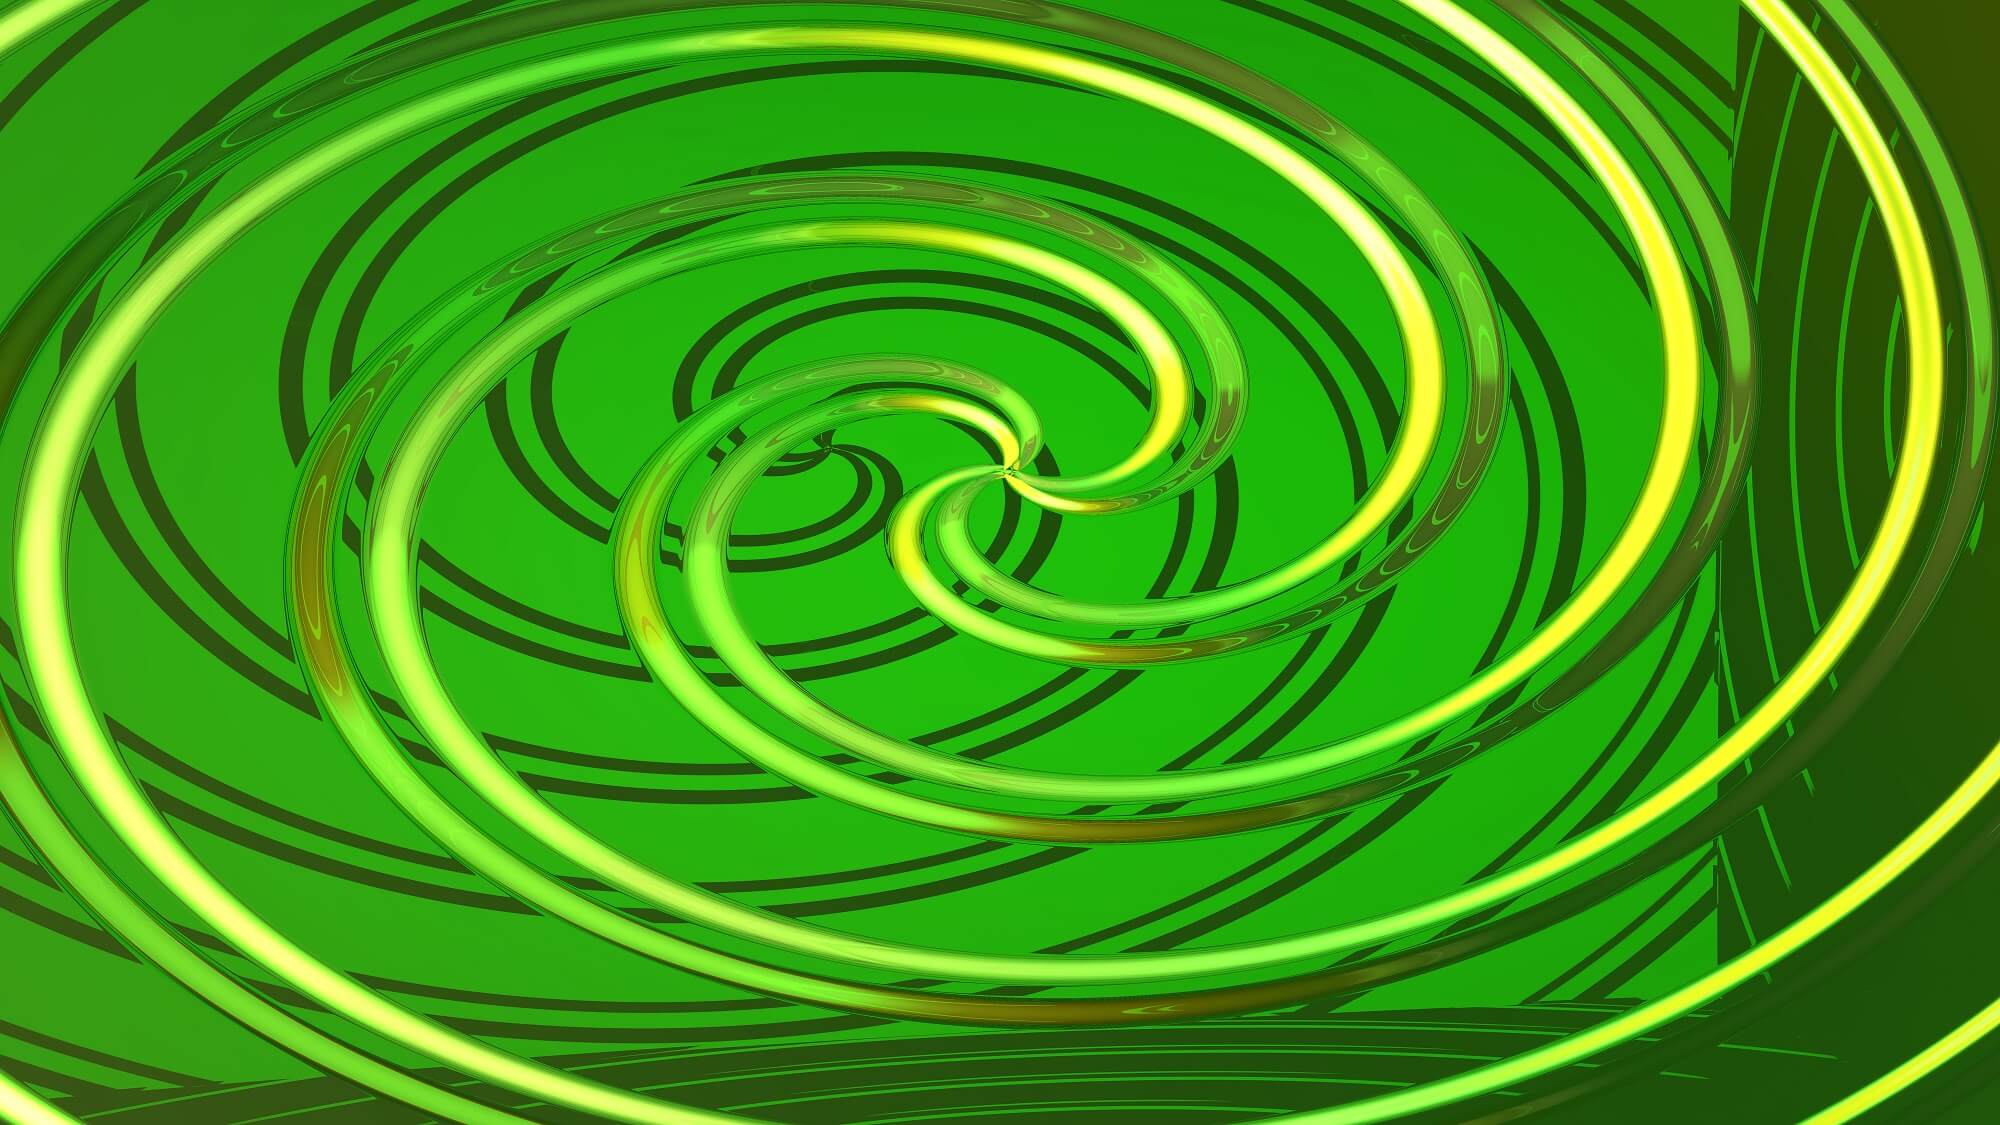 clockwise spiral